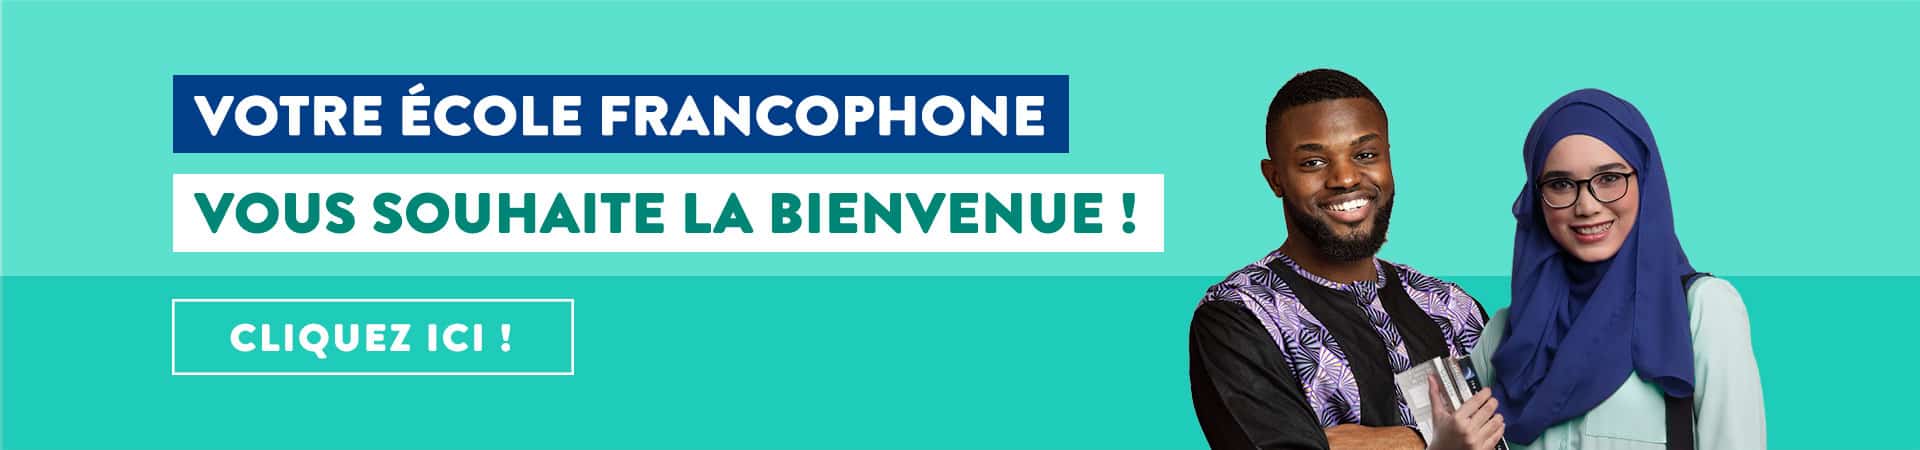 Votre école francophone vous souhaite la bienvenue !